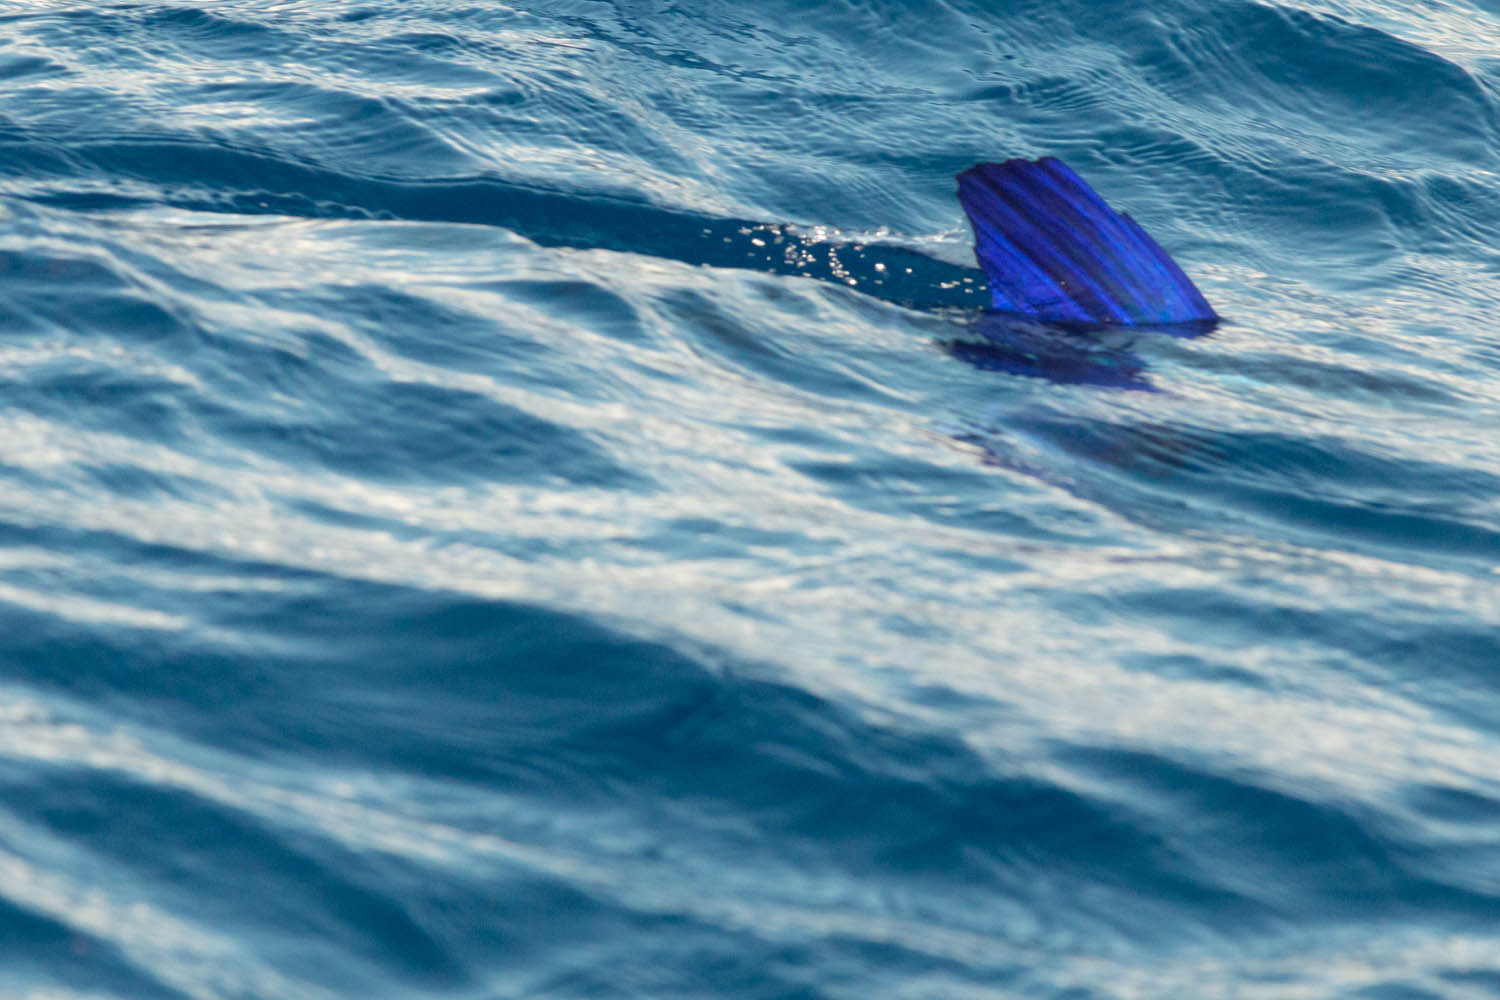 Voyage naturaliste - les cétacés et oiseaux marins des Açores. Marlin © Stéphanie Vigetta -Wild Seas Explorer